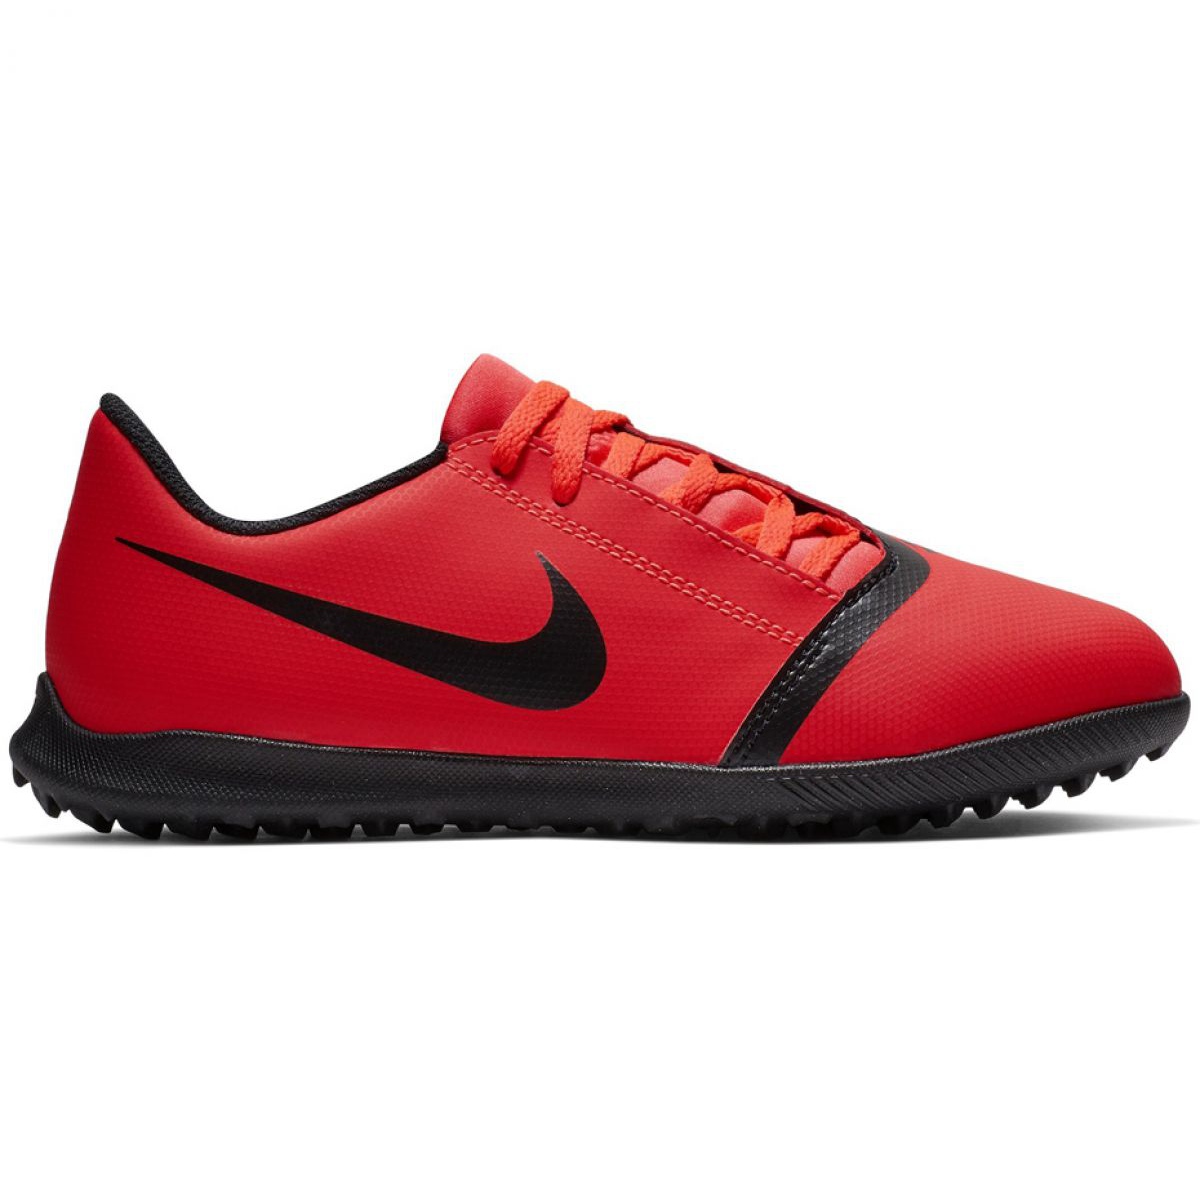 Buty piłkarskie Nike Phantom Venom Club Tf Jr AO0400-600 czerwone wielokolorowe